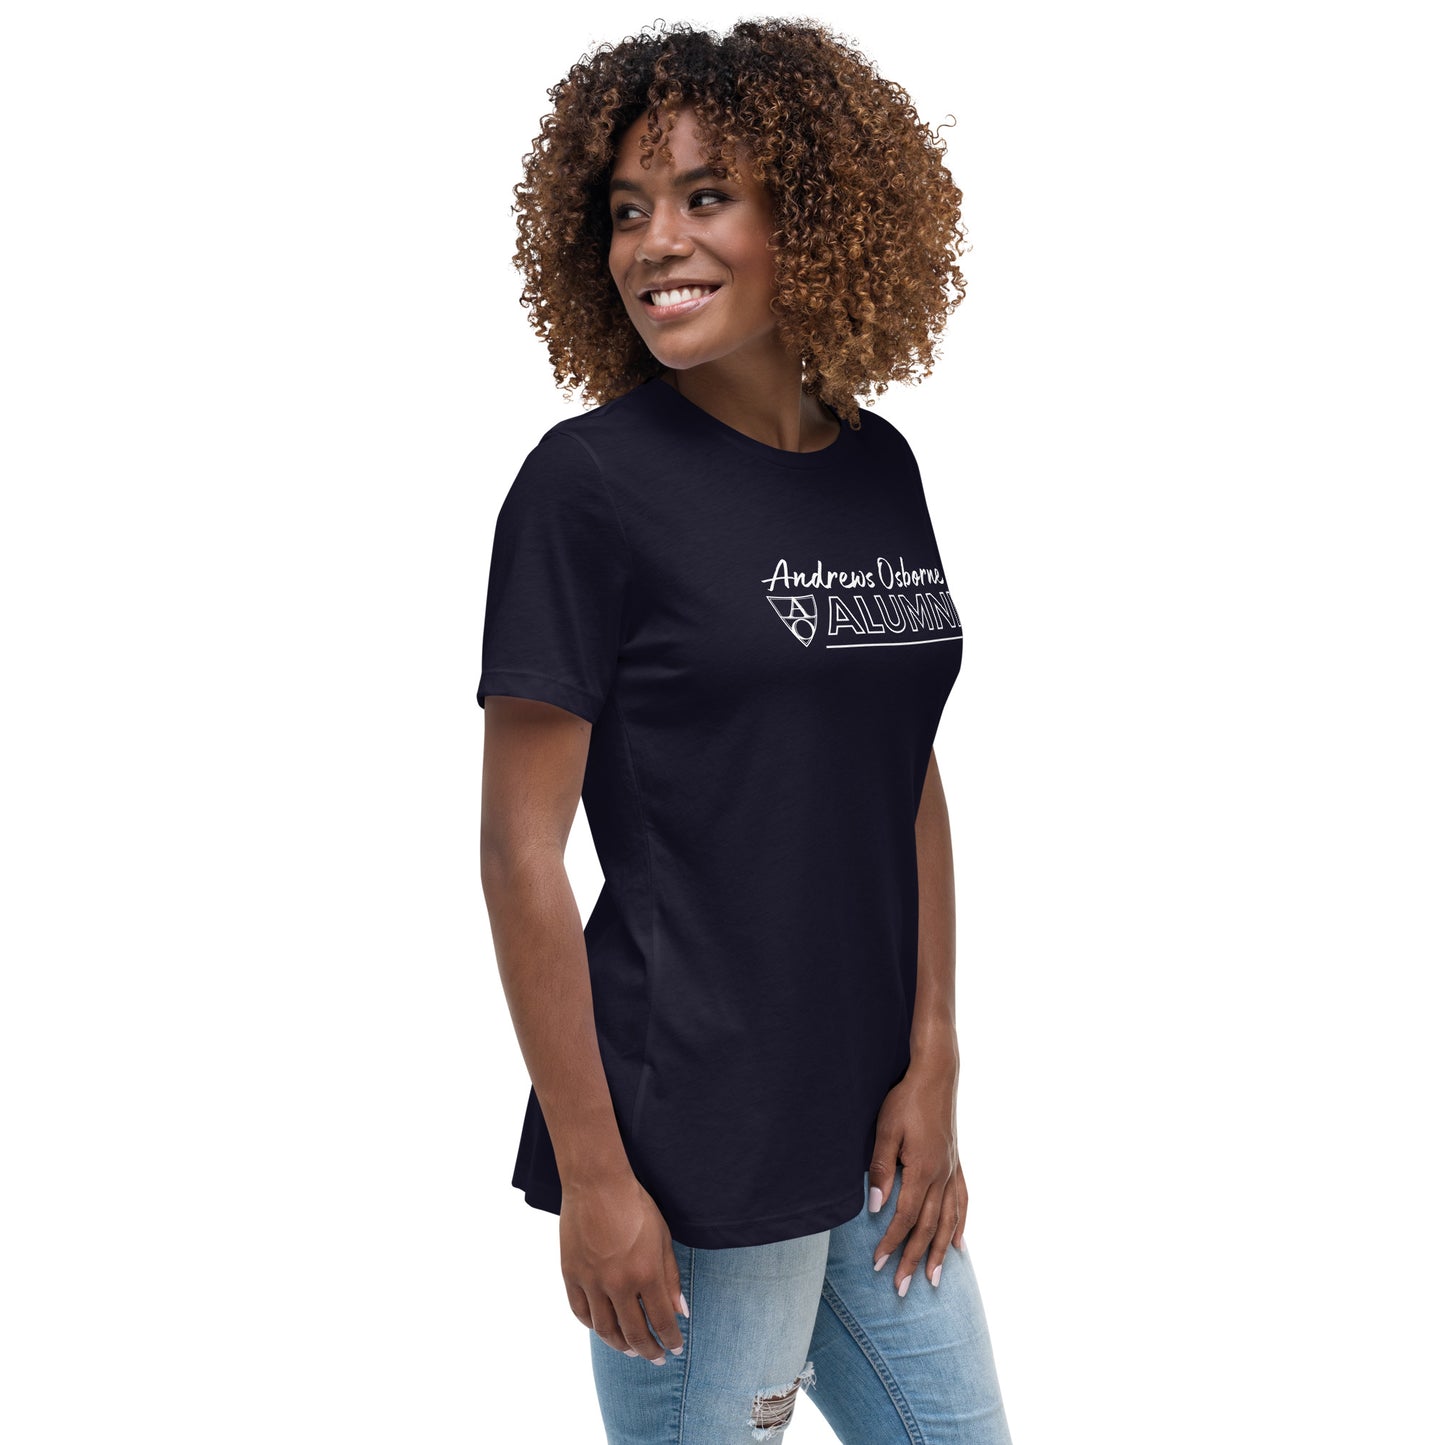 Andrews Osborne Alumni Women's Relaxed T-Shirt